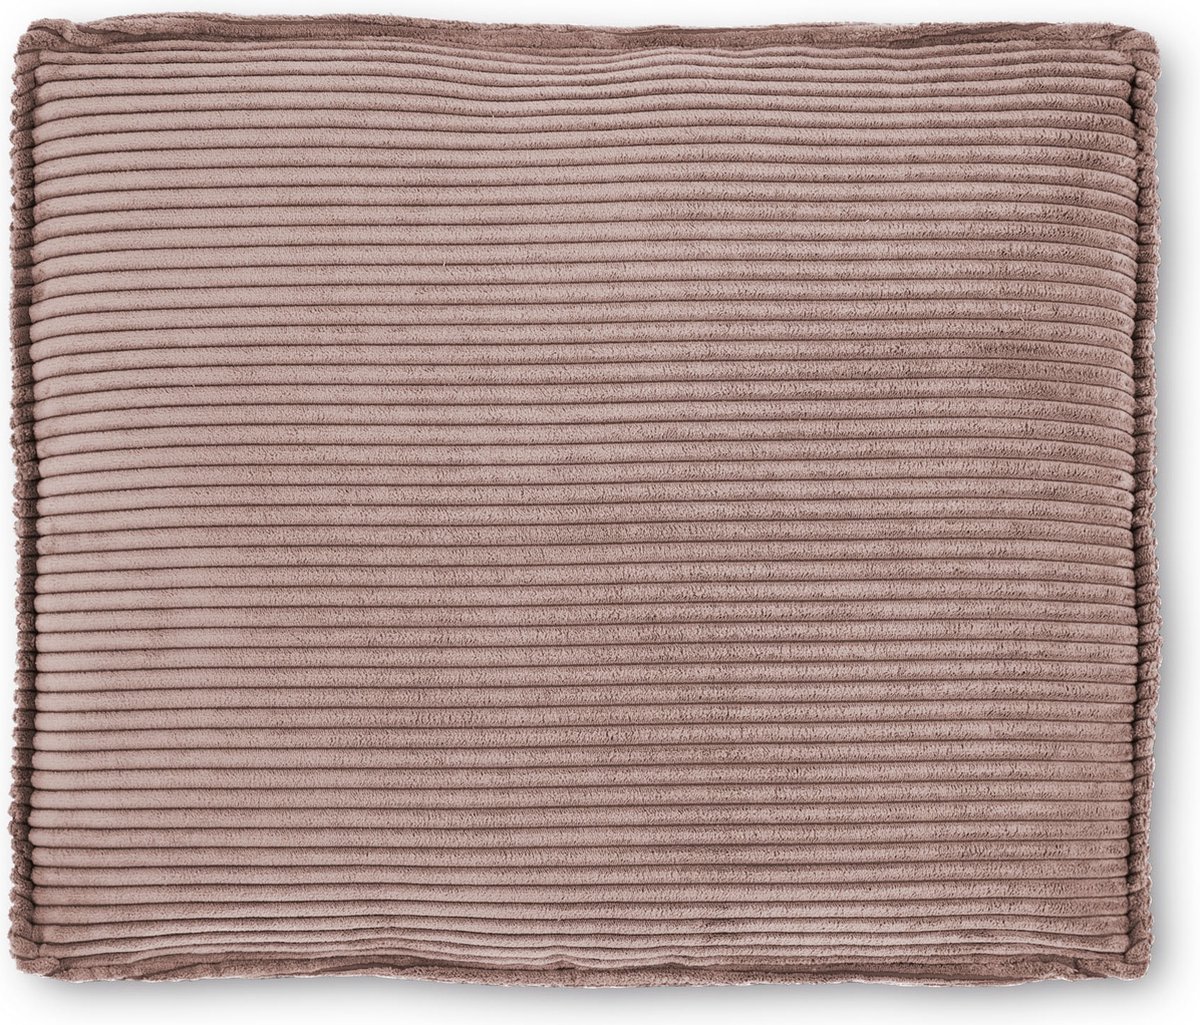 Kave Home Blok kussen in roze corduroy met brede naad 50 x 60 cm